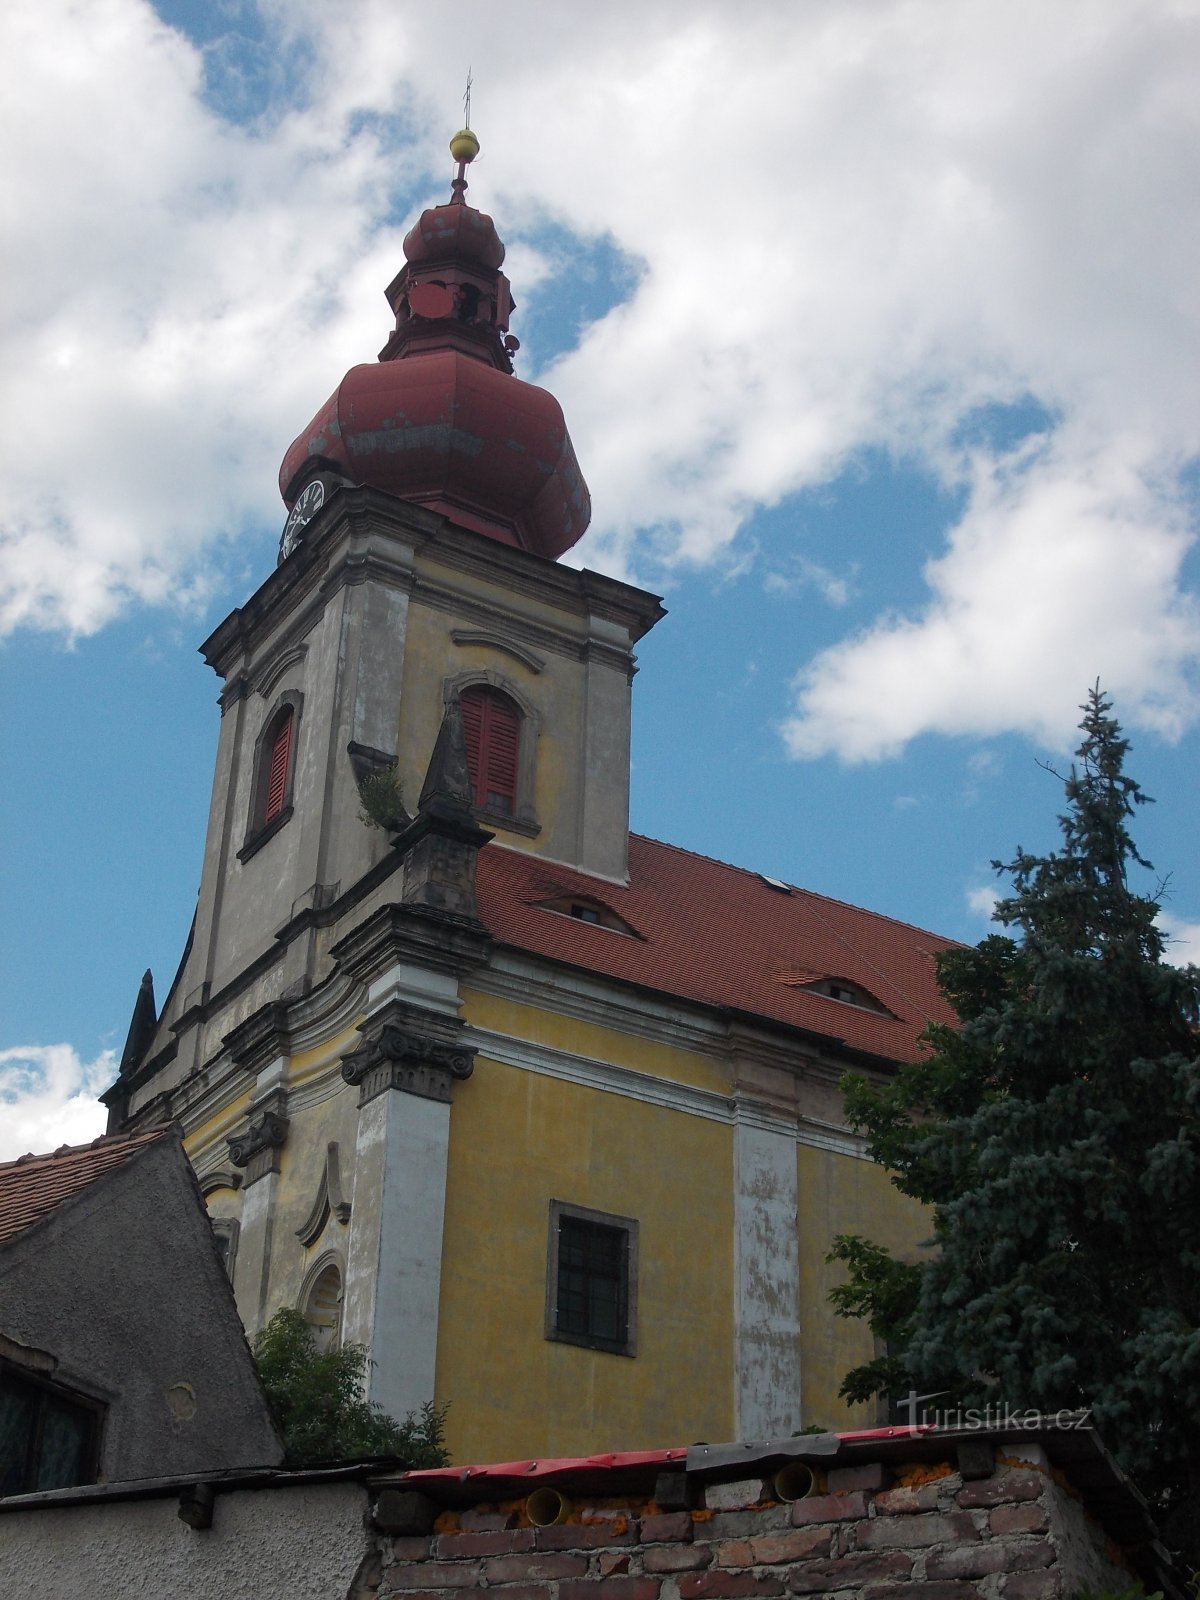 μια εκκλησία με ενσωματωμένο πρισματικό πύργο, στην κορυφή του οποίου ένας πύργος σε σχήμα κρεμμυδιού